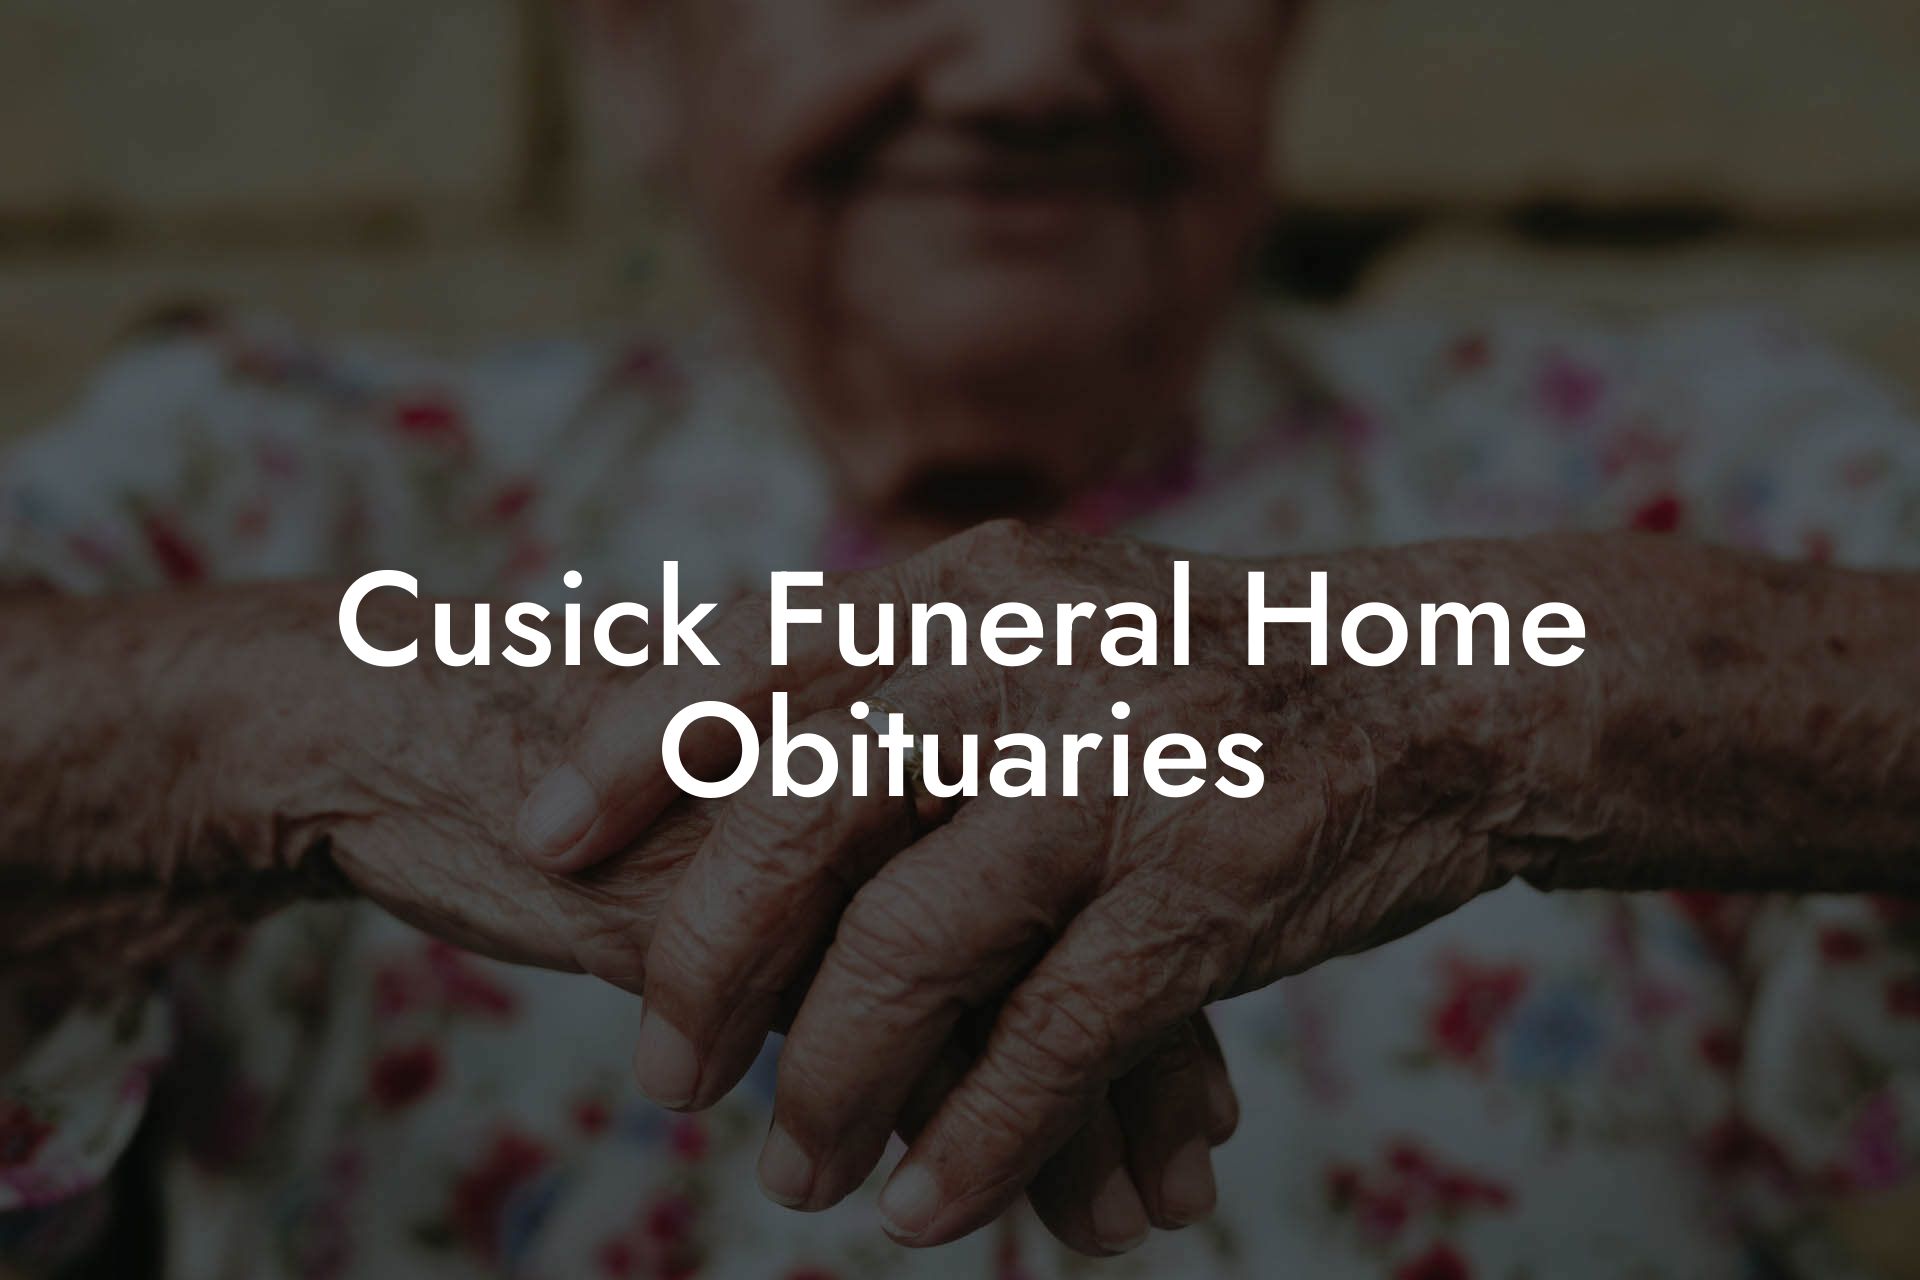 Cusick Funeral Home Obituaries